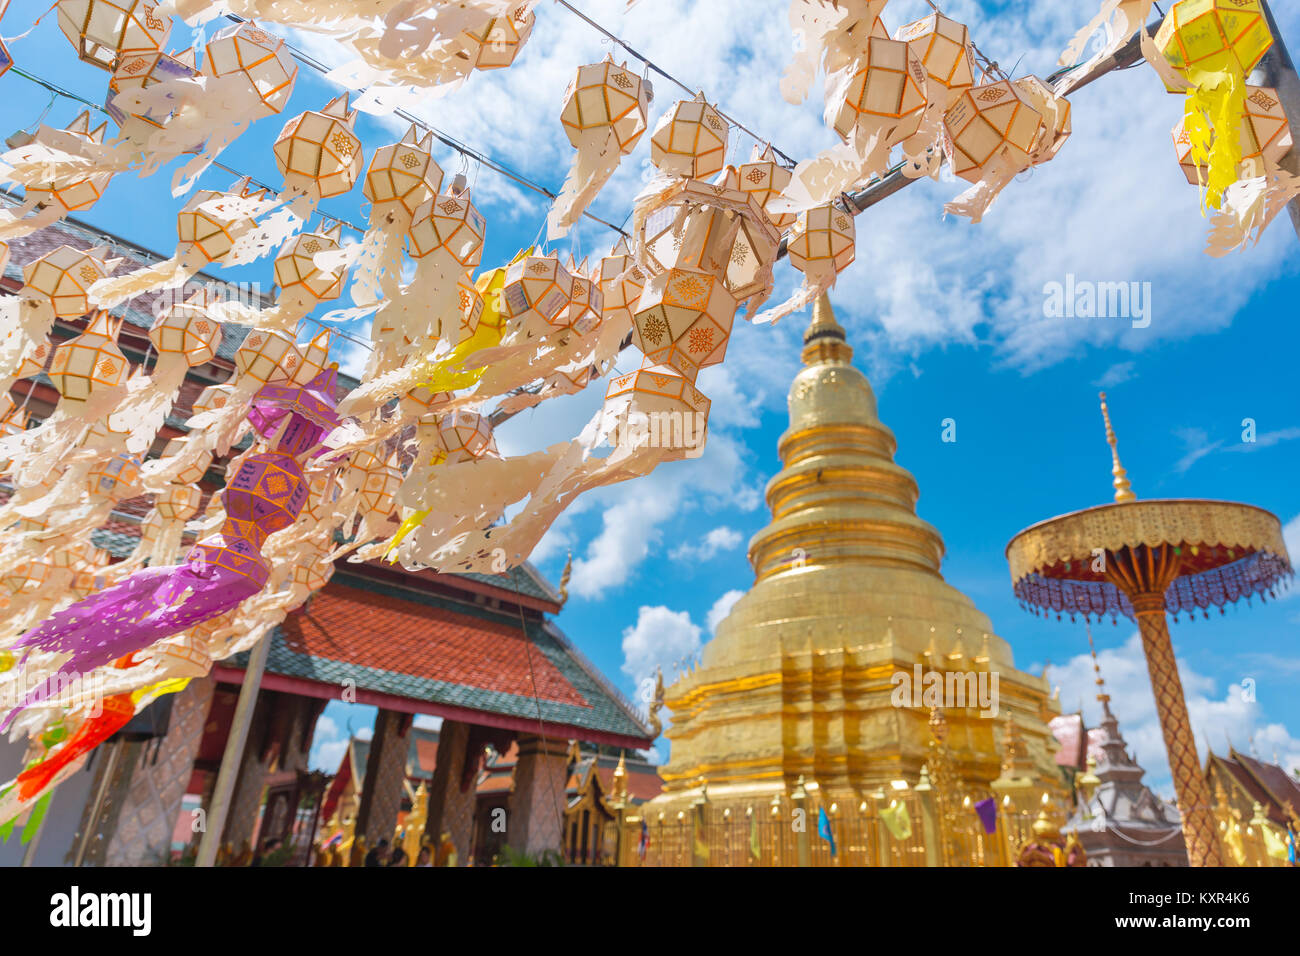 Lanterne en papier avec golden pagoda festival historique au Wat Phra That Hariphunchai Lamphun Thaïlande Banque D'Images